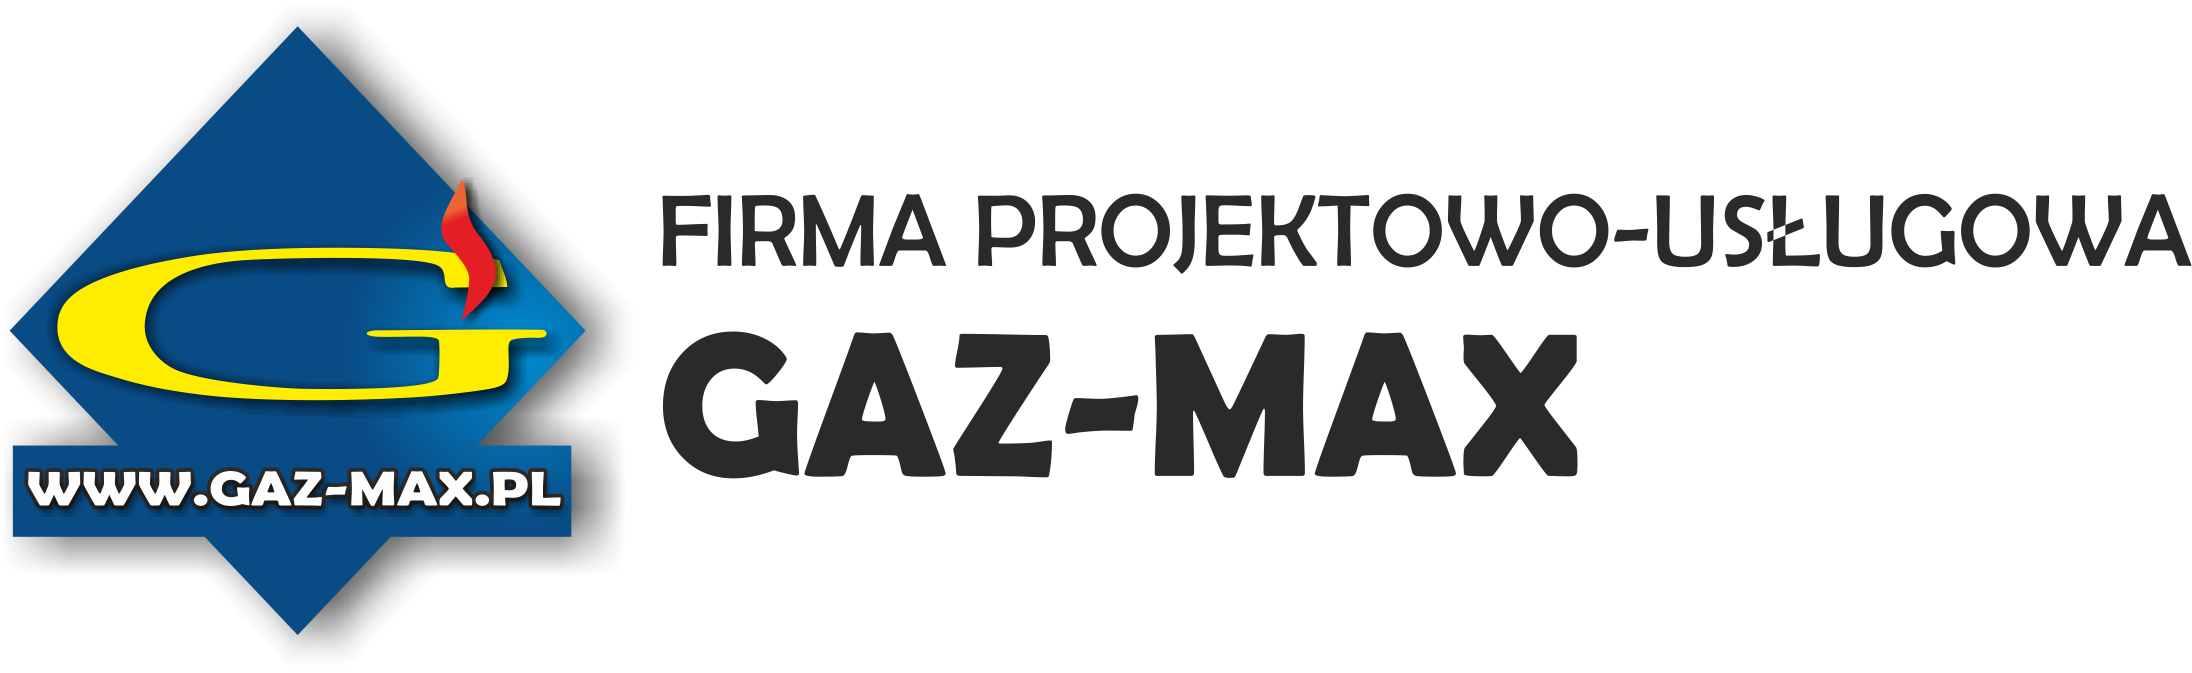 Firma Projektowo-Usługowa: "GAZ-MAX"